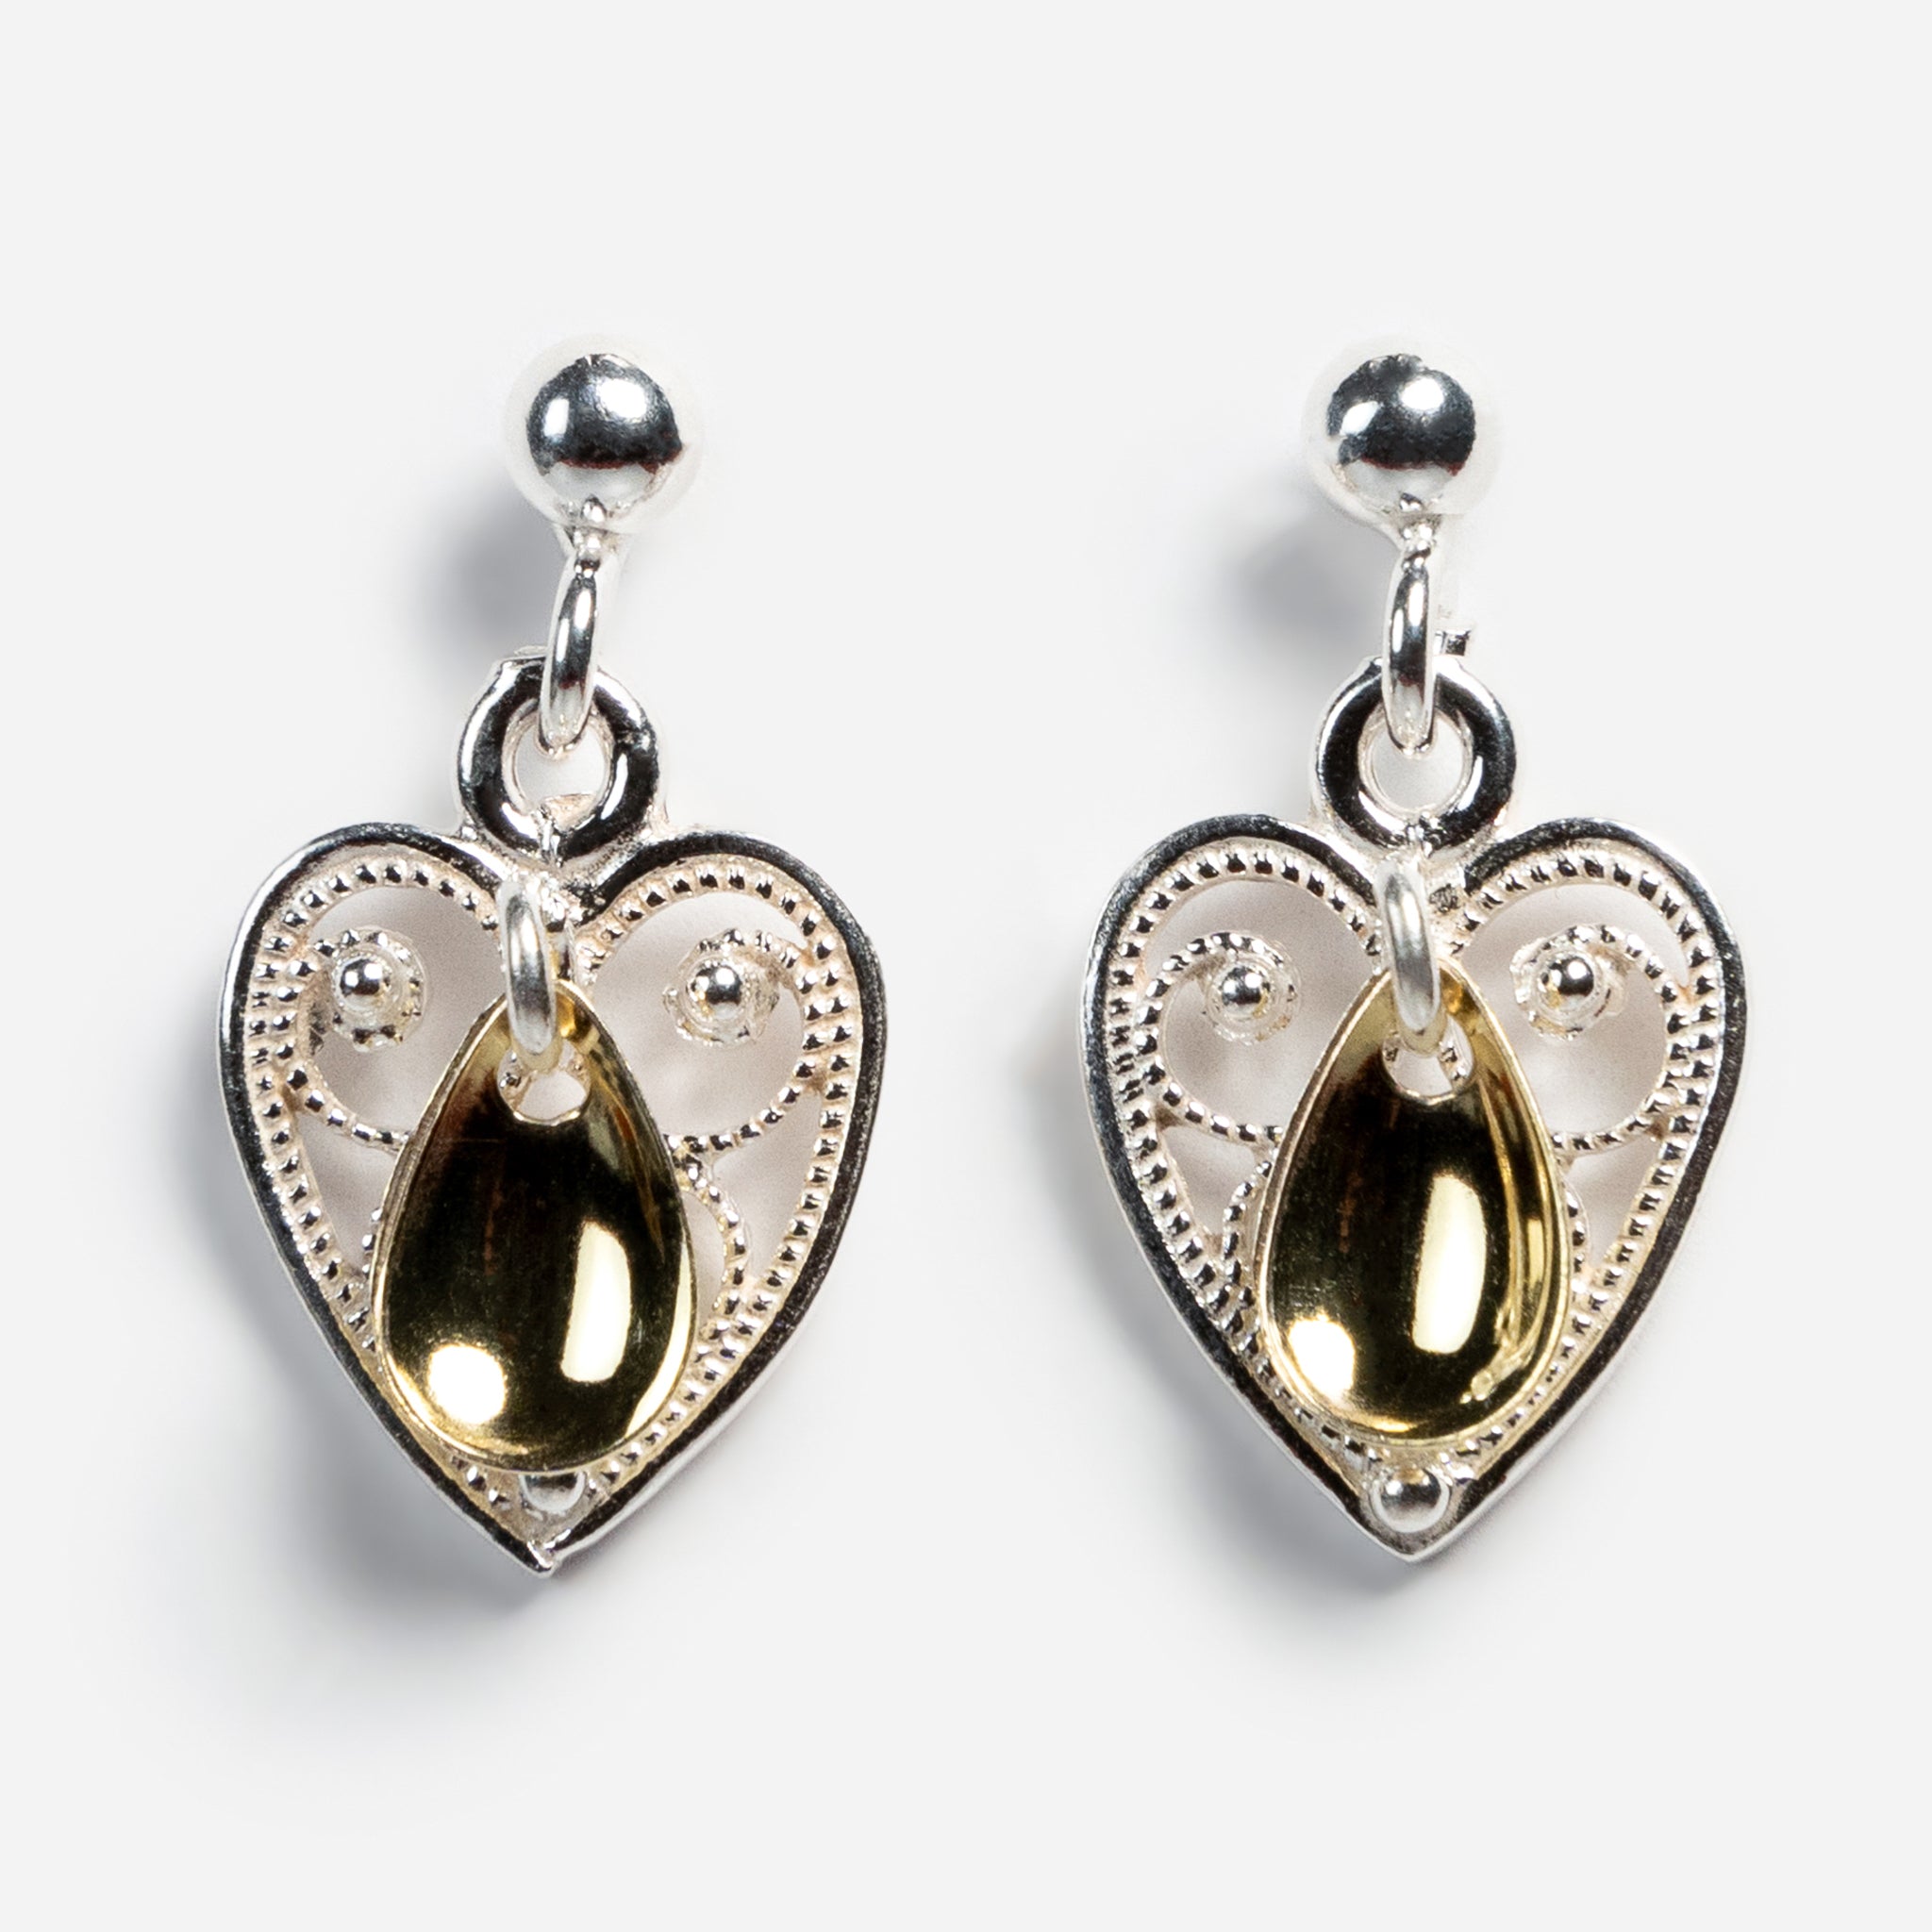 Heart Drop Sølje Earrings From Norway